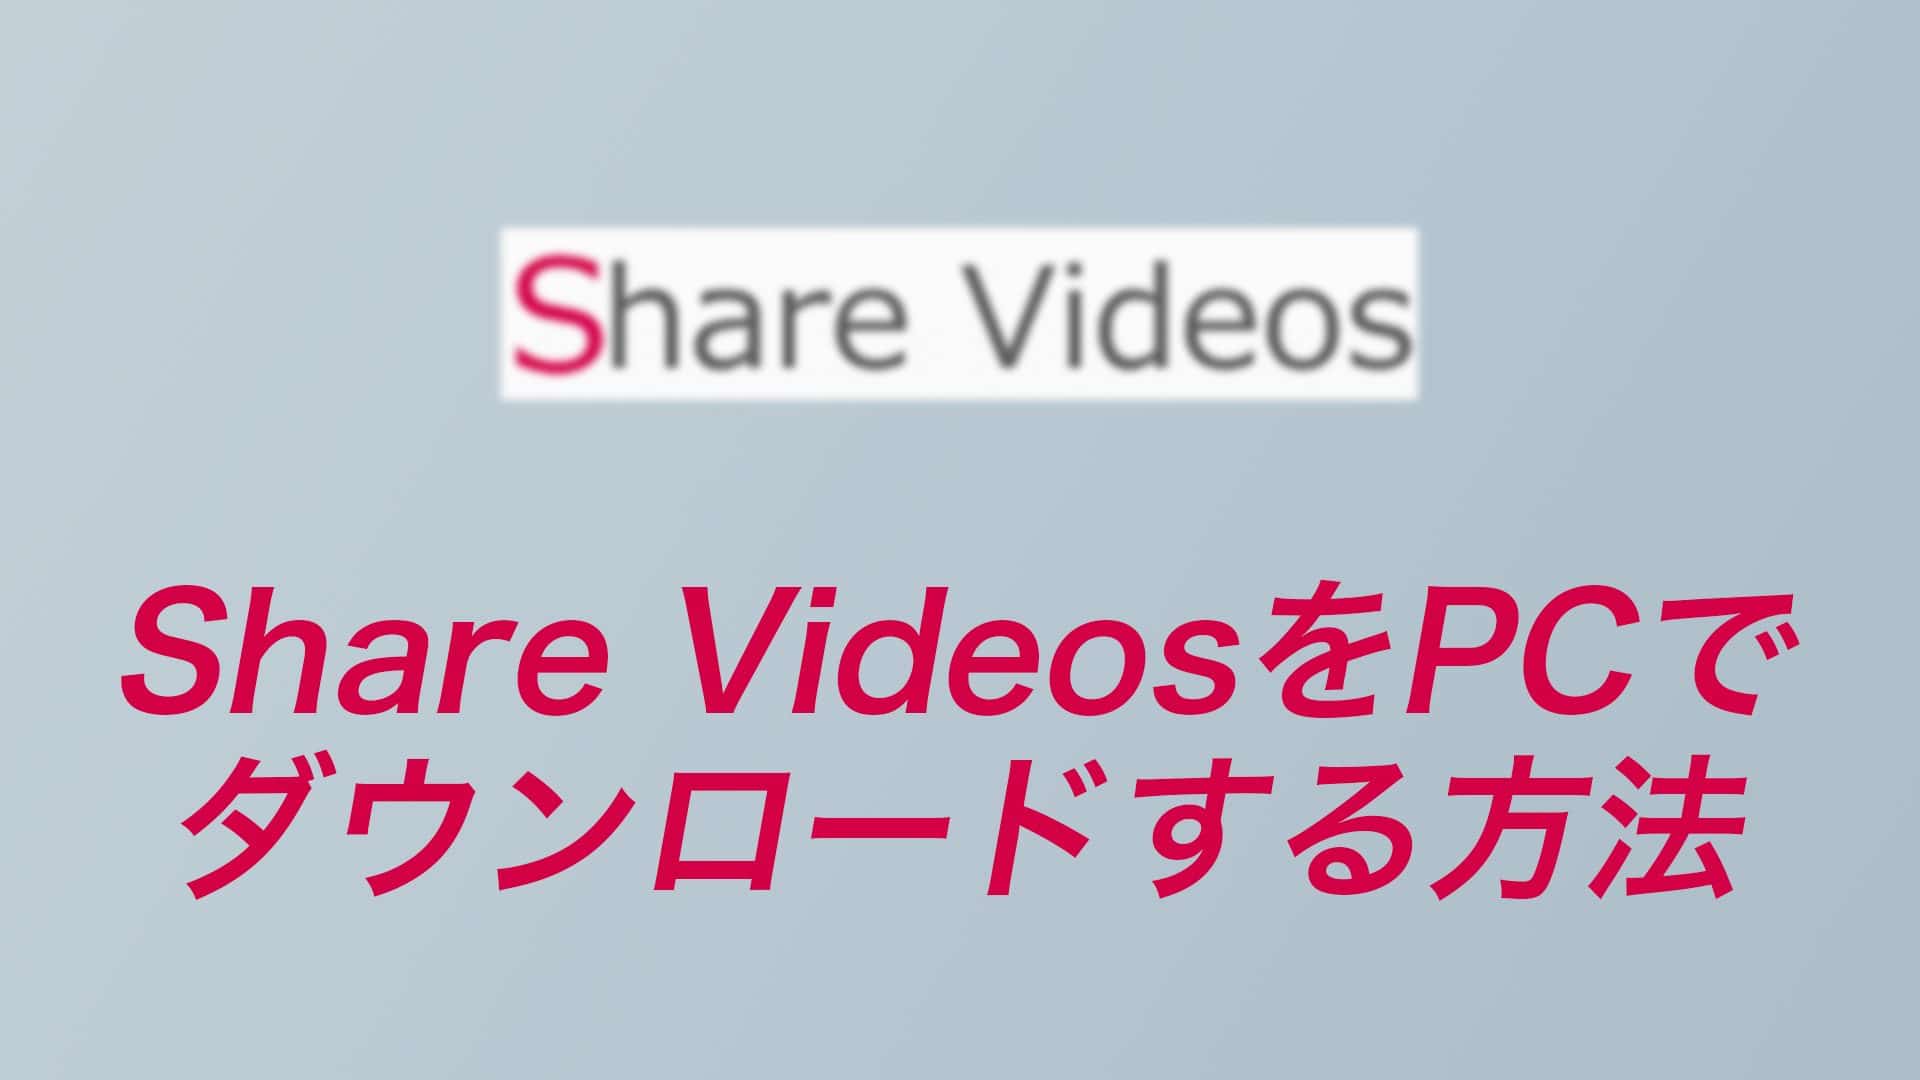 ae46b1f460ee46f789c27b264a6cb421 3 1 - 【2022年】Share Videosの動画をPCでダウンロードする方法